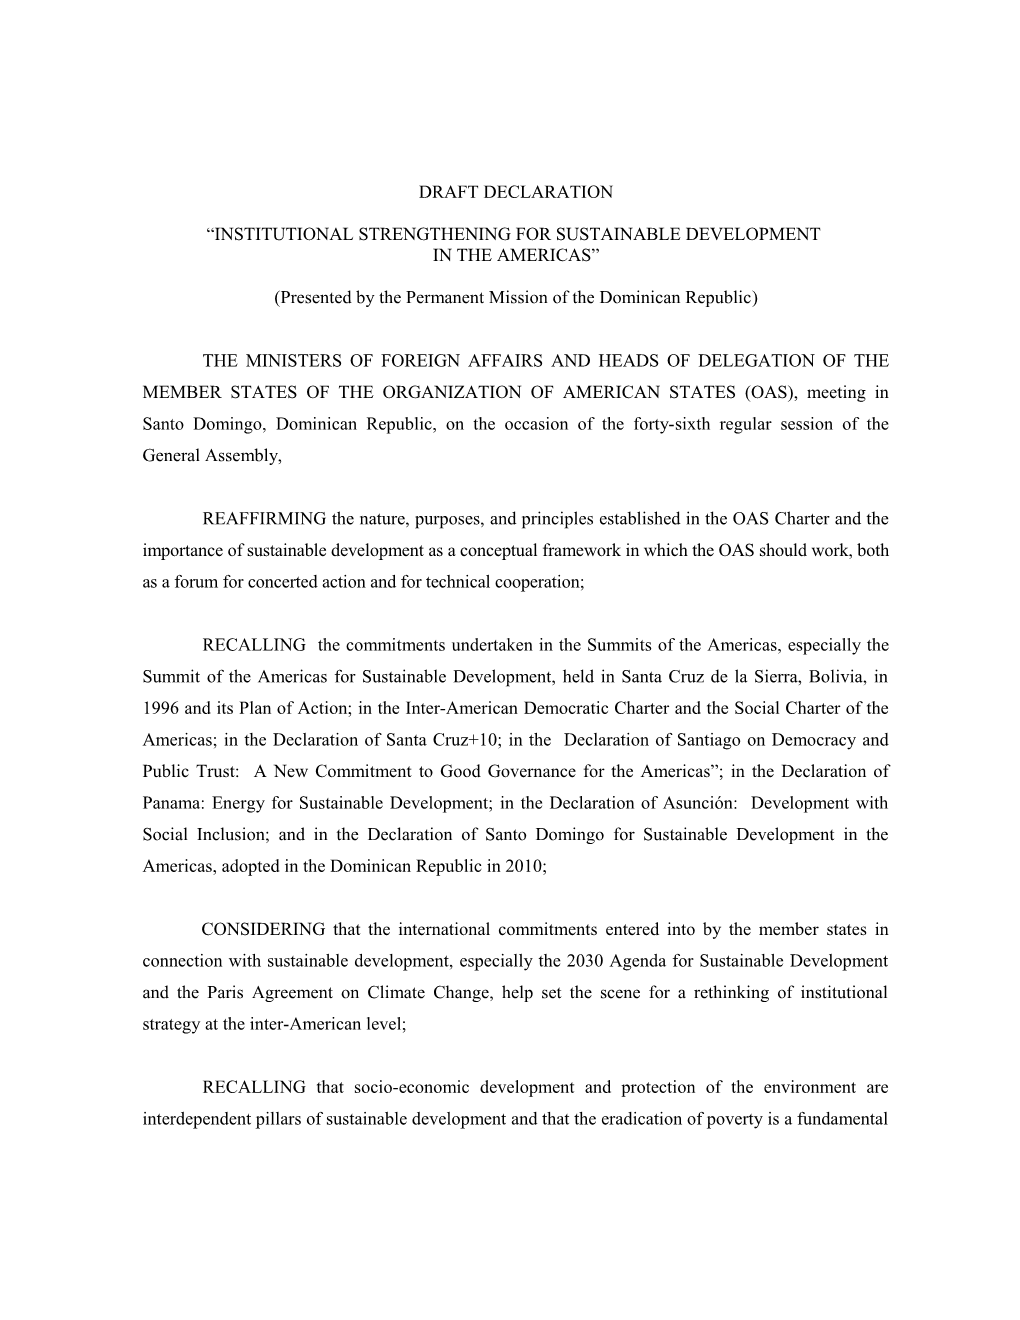 Proyecto De Declaración De Santo Domingo